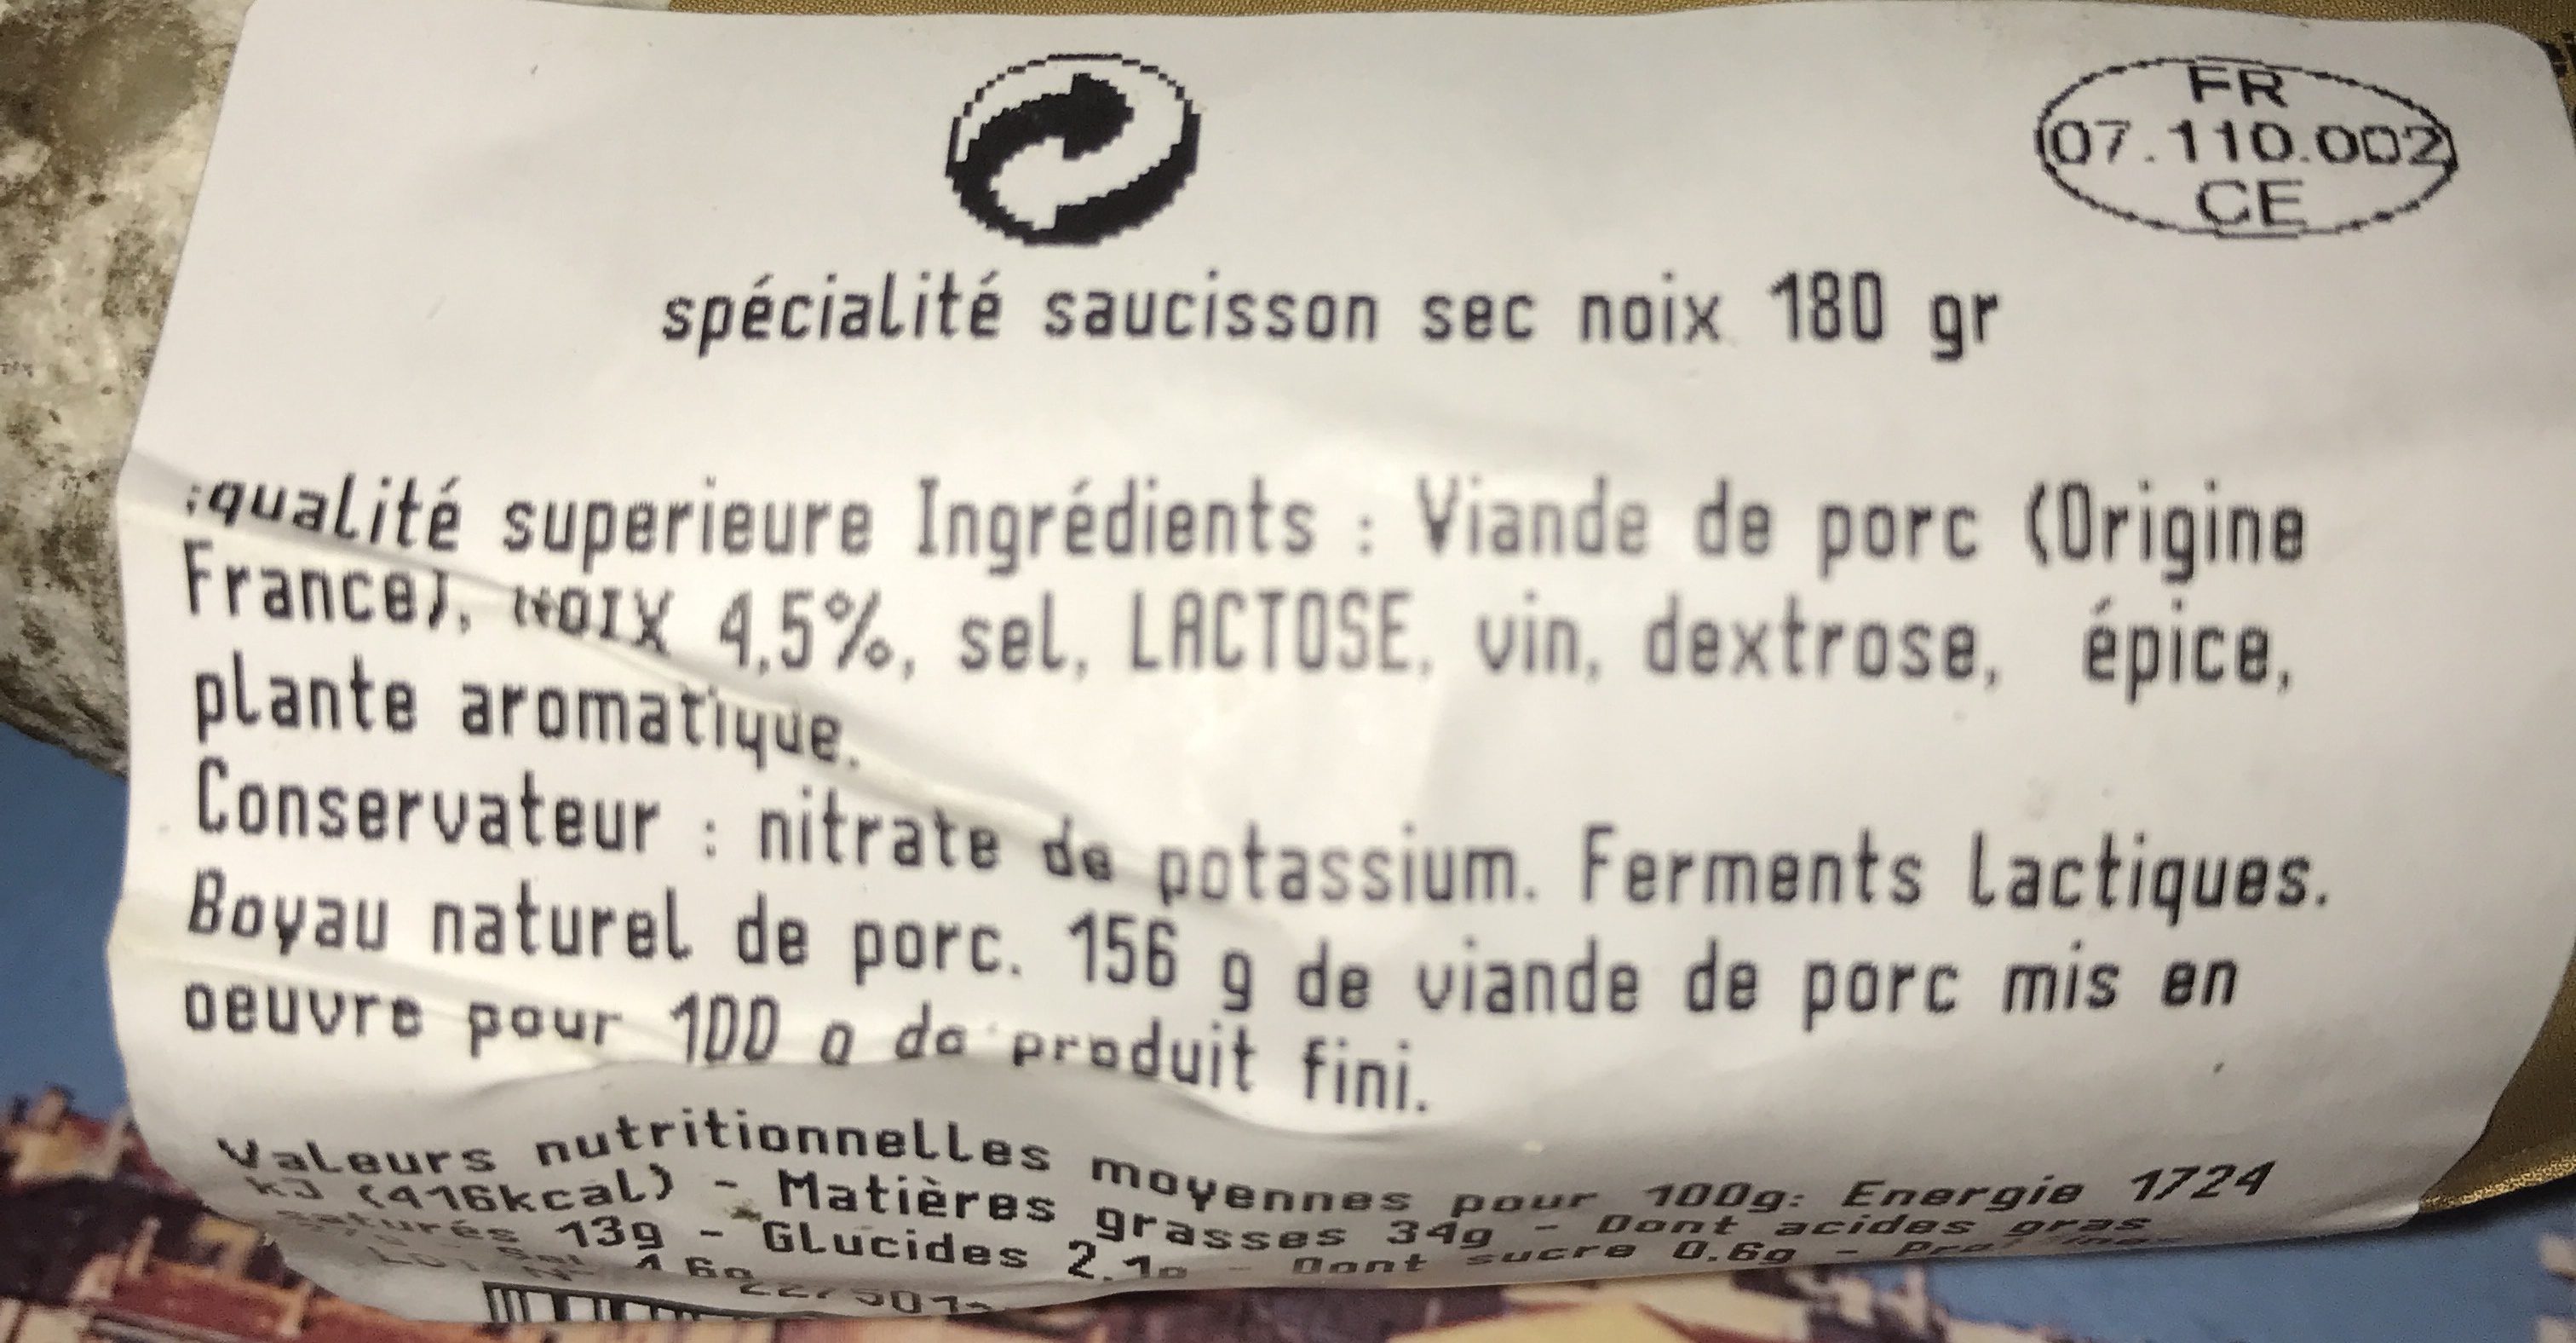 Saucisson artisanal aux noix - Ingredients - fr